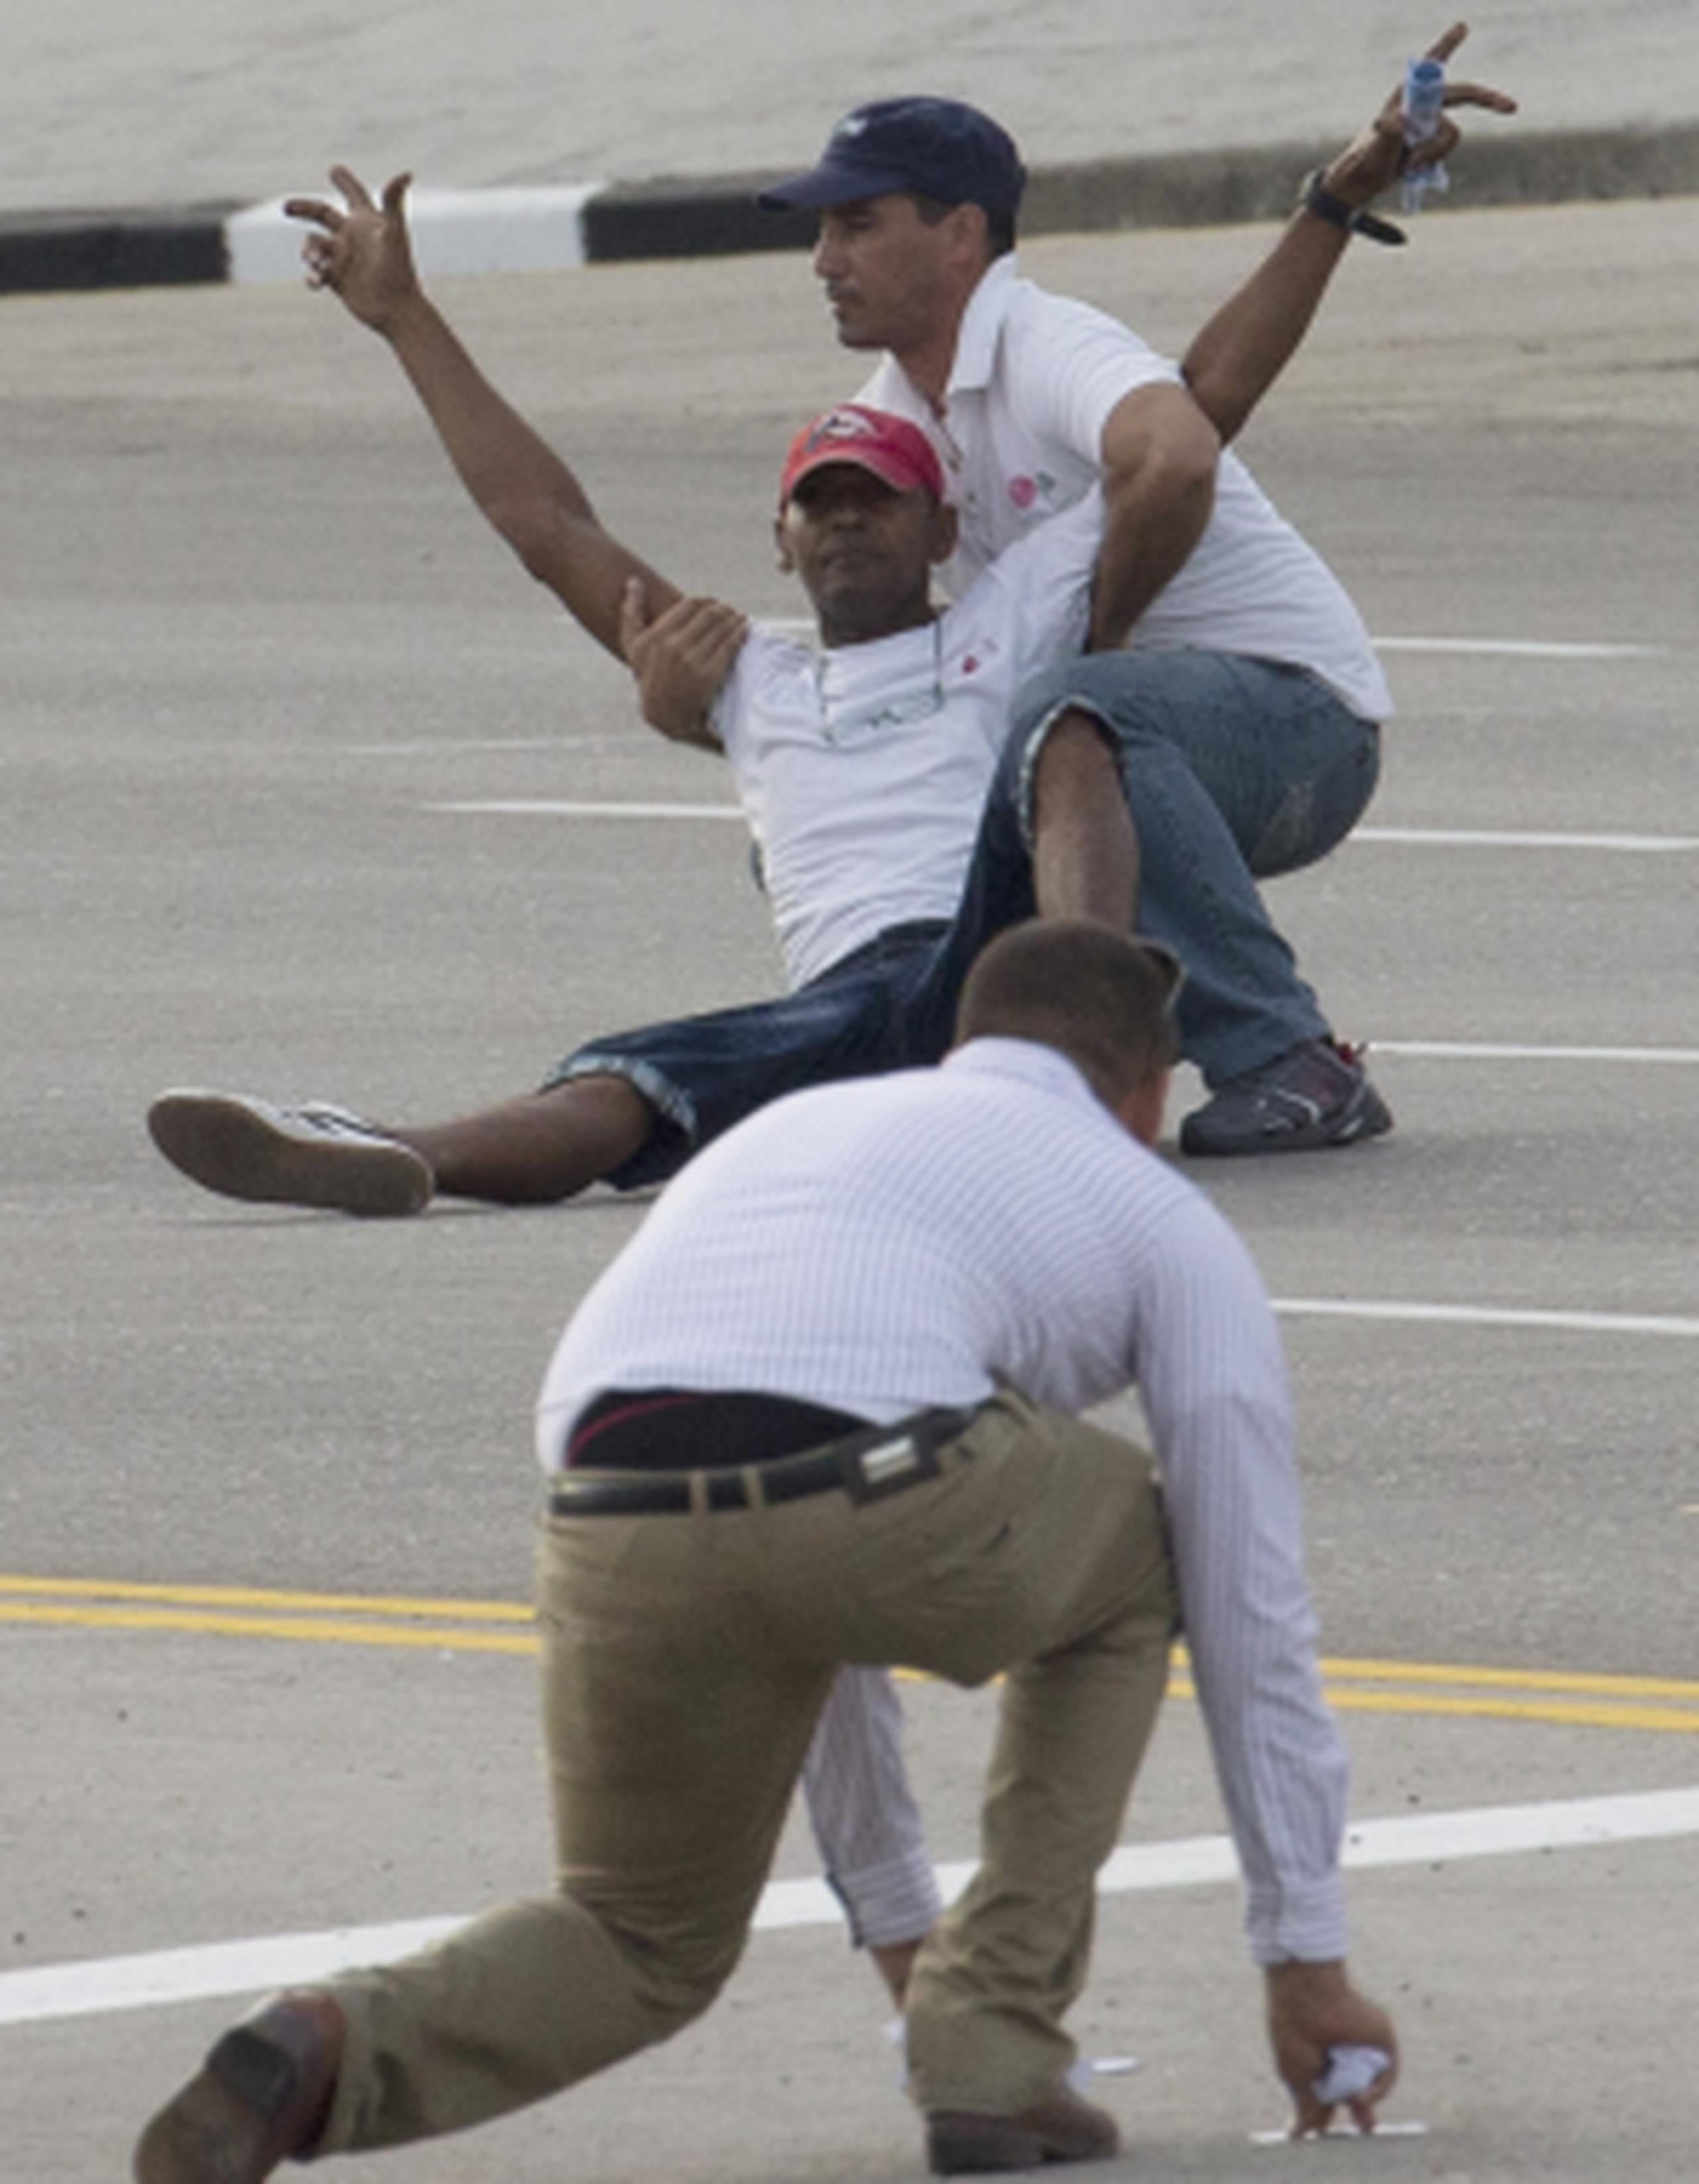 Oficiales de seguridad cubanos intervienen con un sujeto que lanzaba panfletos en la ruta del papa. (AP)